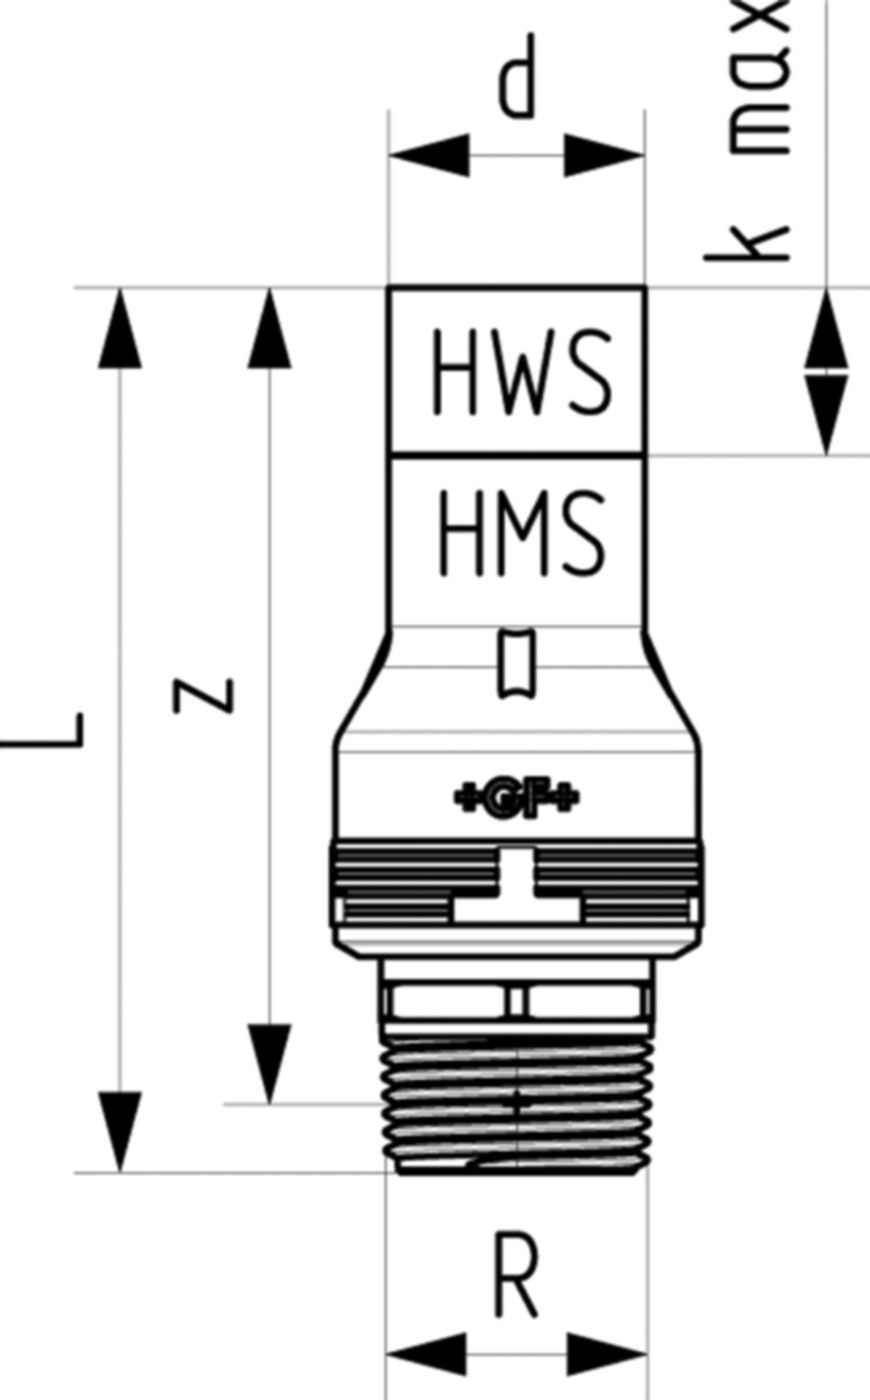 Übergang mit Aussengewinde 6214 20mm - 3/4" 761 069 668 (761 069 387) - GF Instaflex-HWS-Schweisssystem